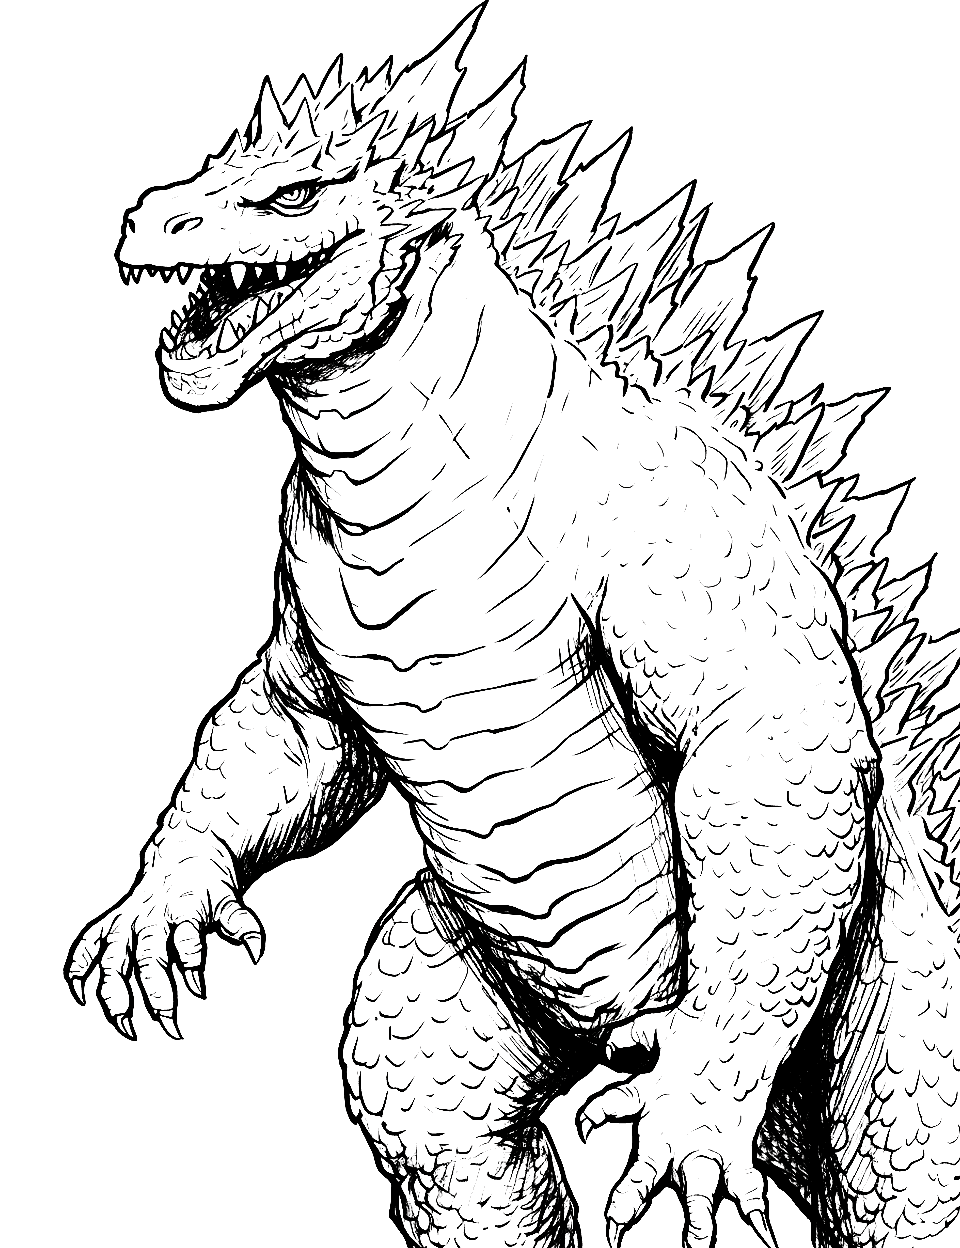 Godzilla coloring pages free printable sheets